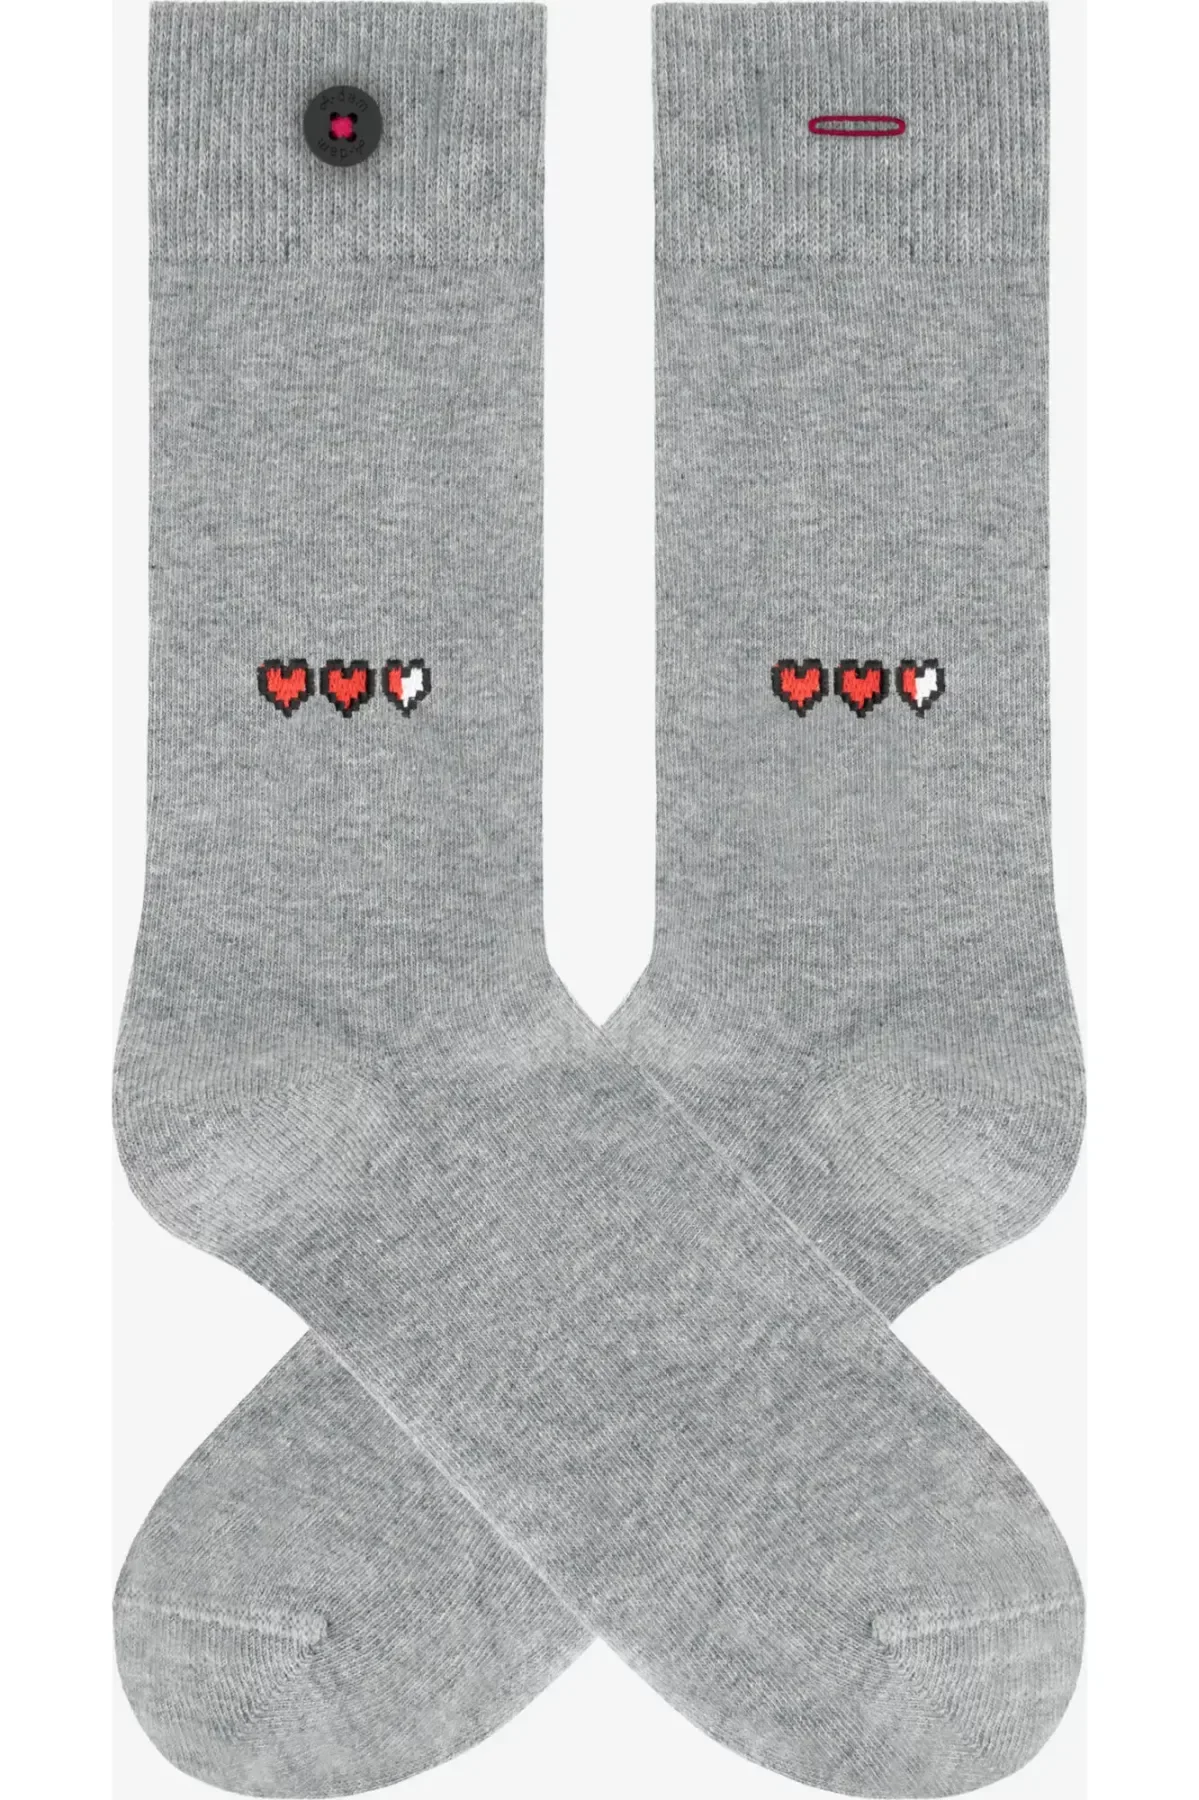 A-dam - Socken - Grey Heart 2